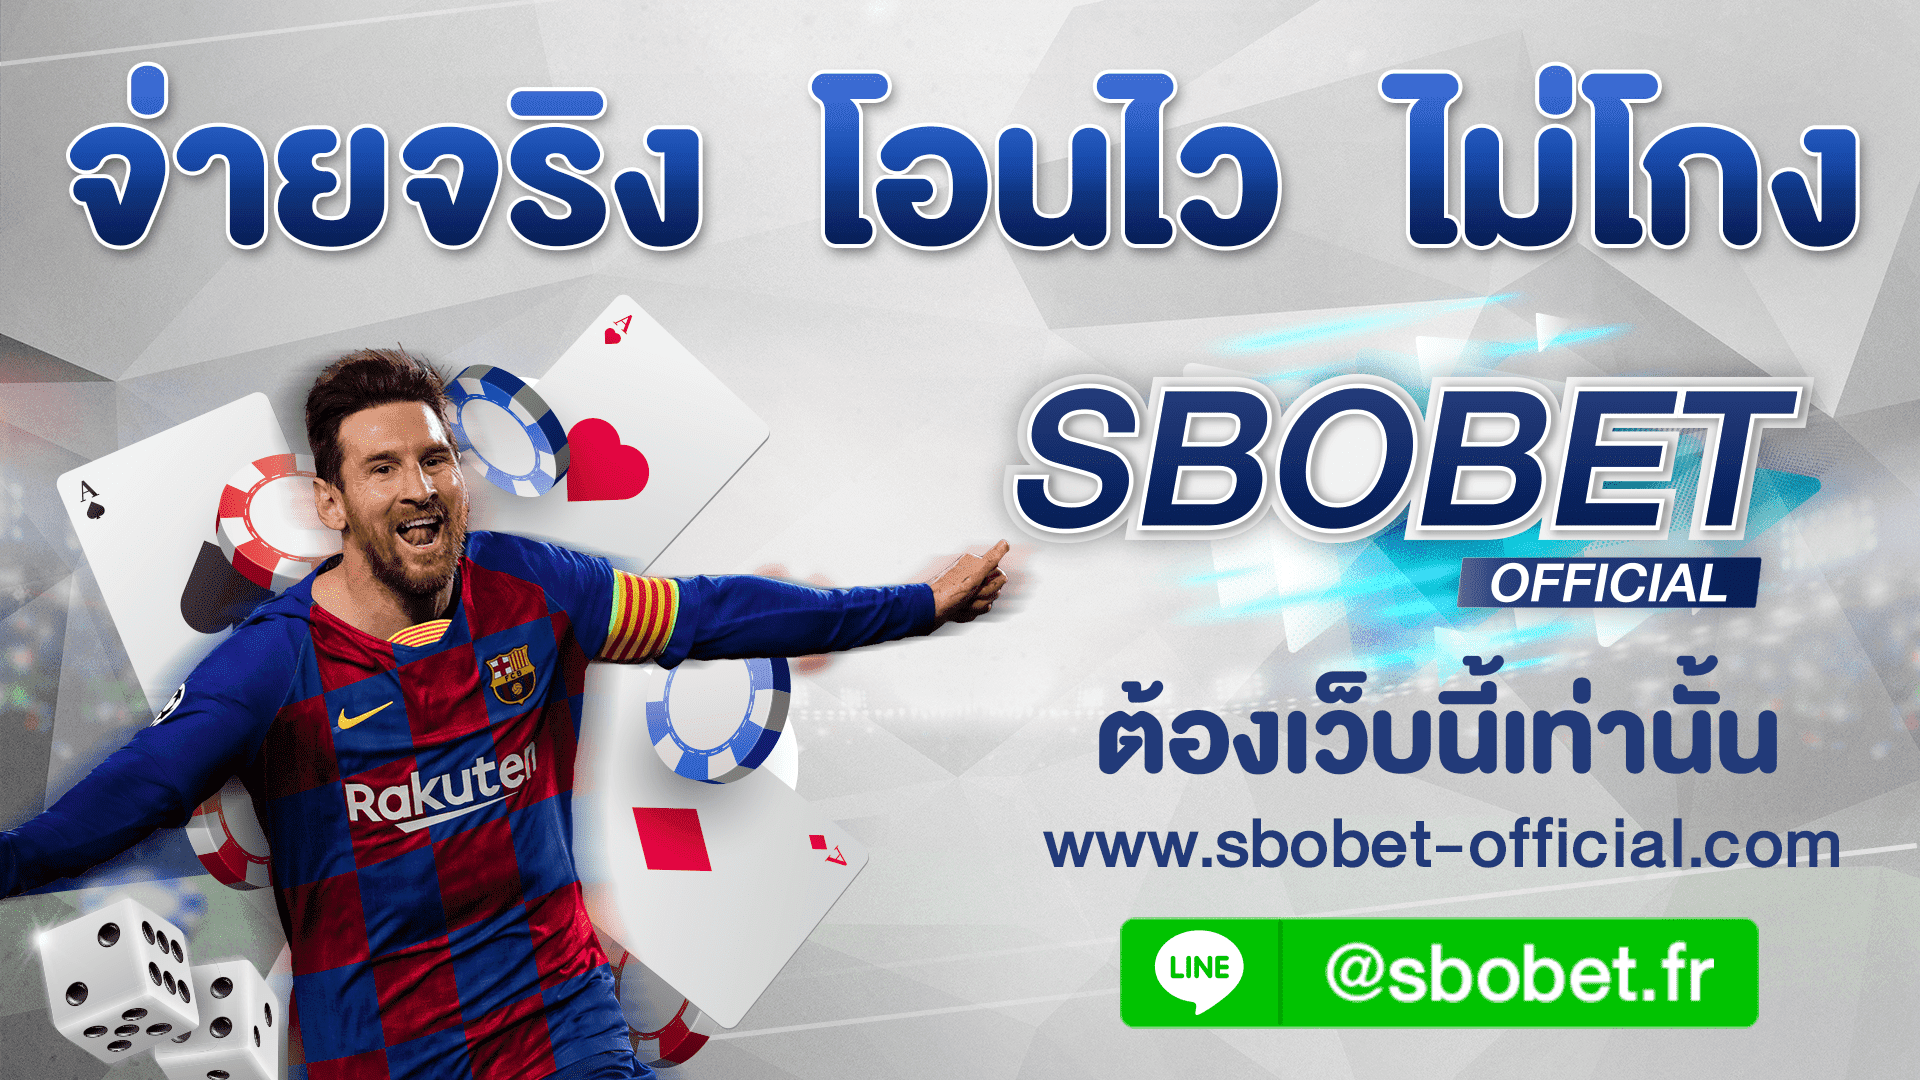 SBOBET ช่องทางการลงทุนออนไลน์ที่ดีที่สุดในประเทศไทย